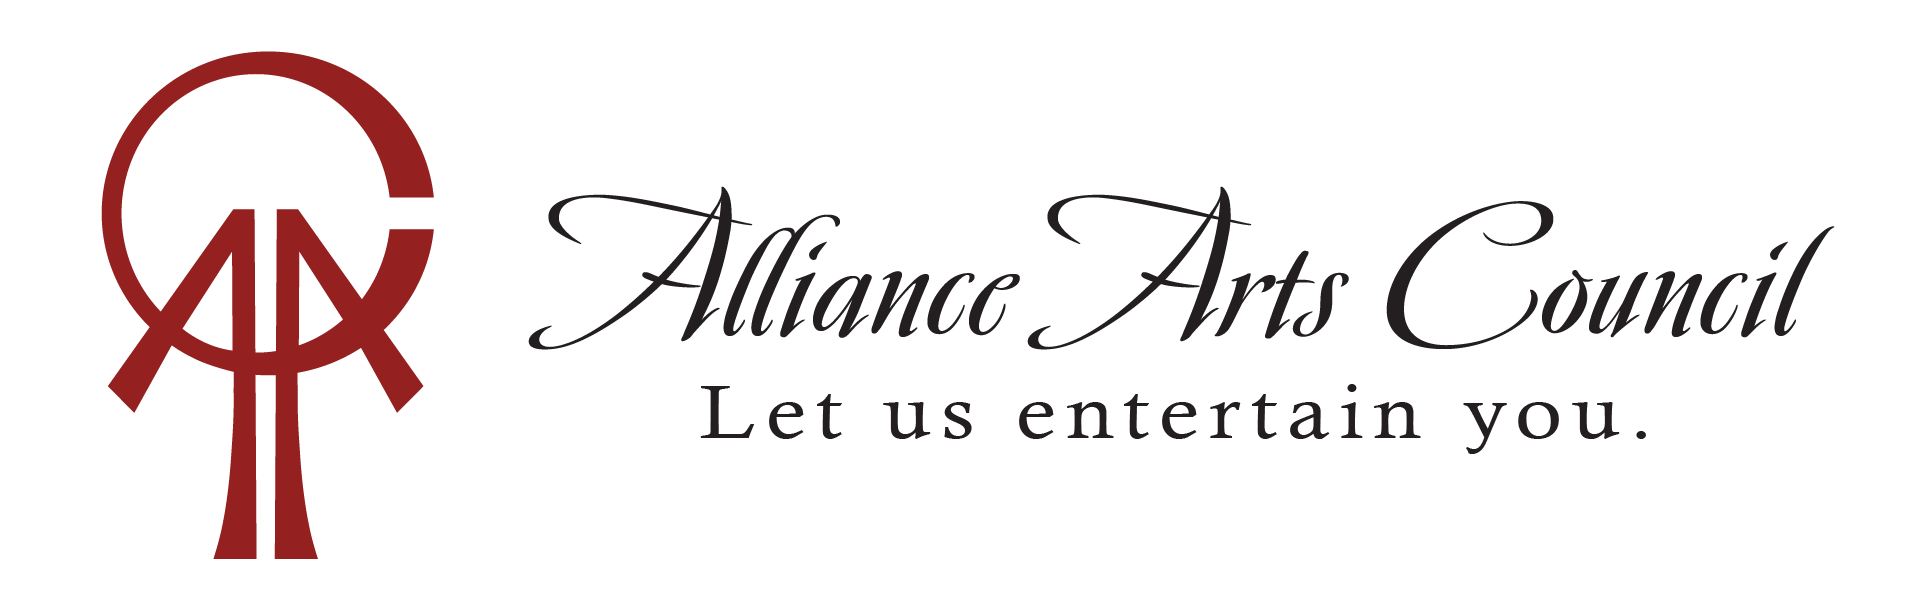 Alliance Arts Council